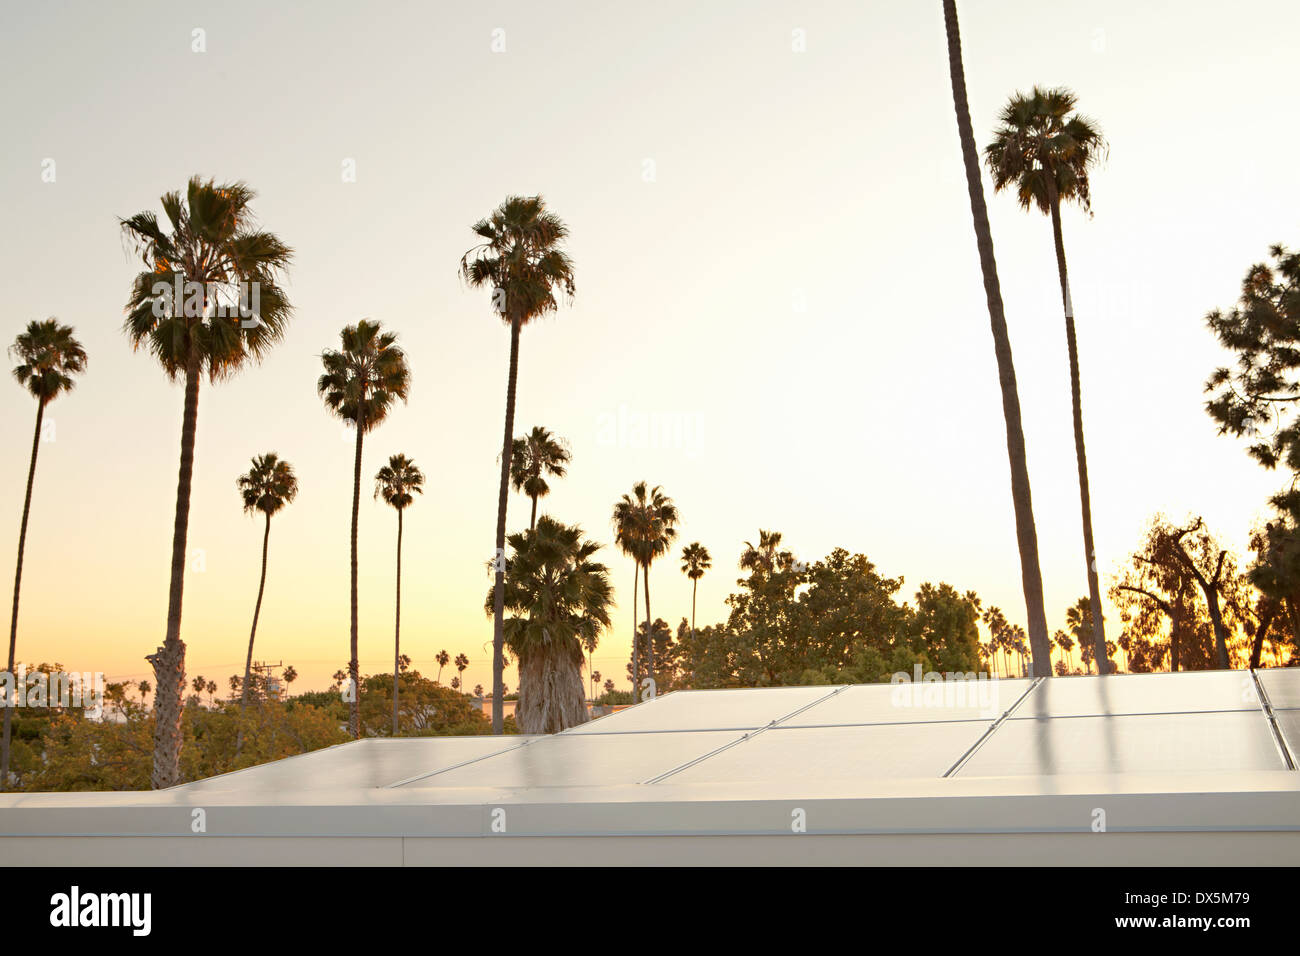 Solar-Panels gegen Sonnenuntergang Himmel mit Palmen Bäume, Kalifornien, USA Stockfoto